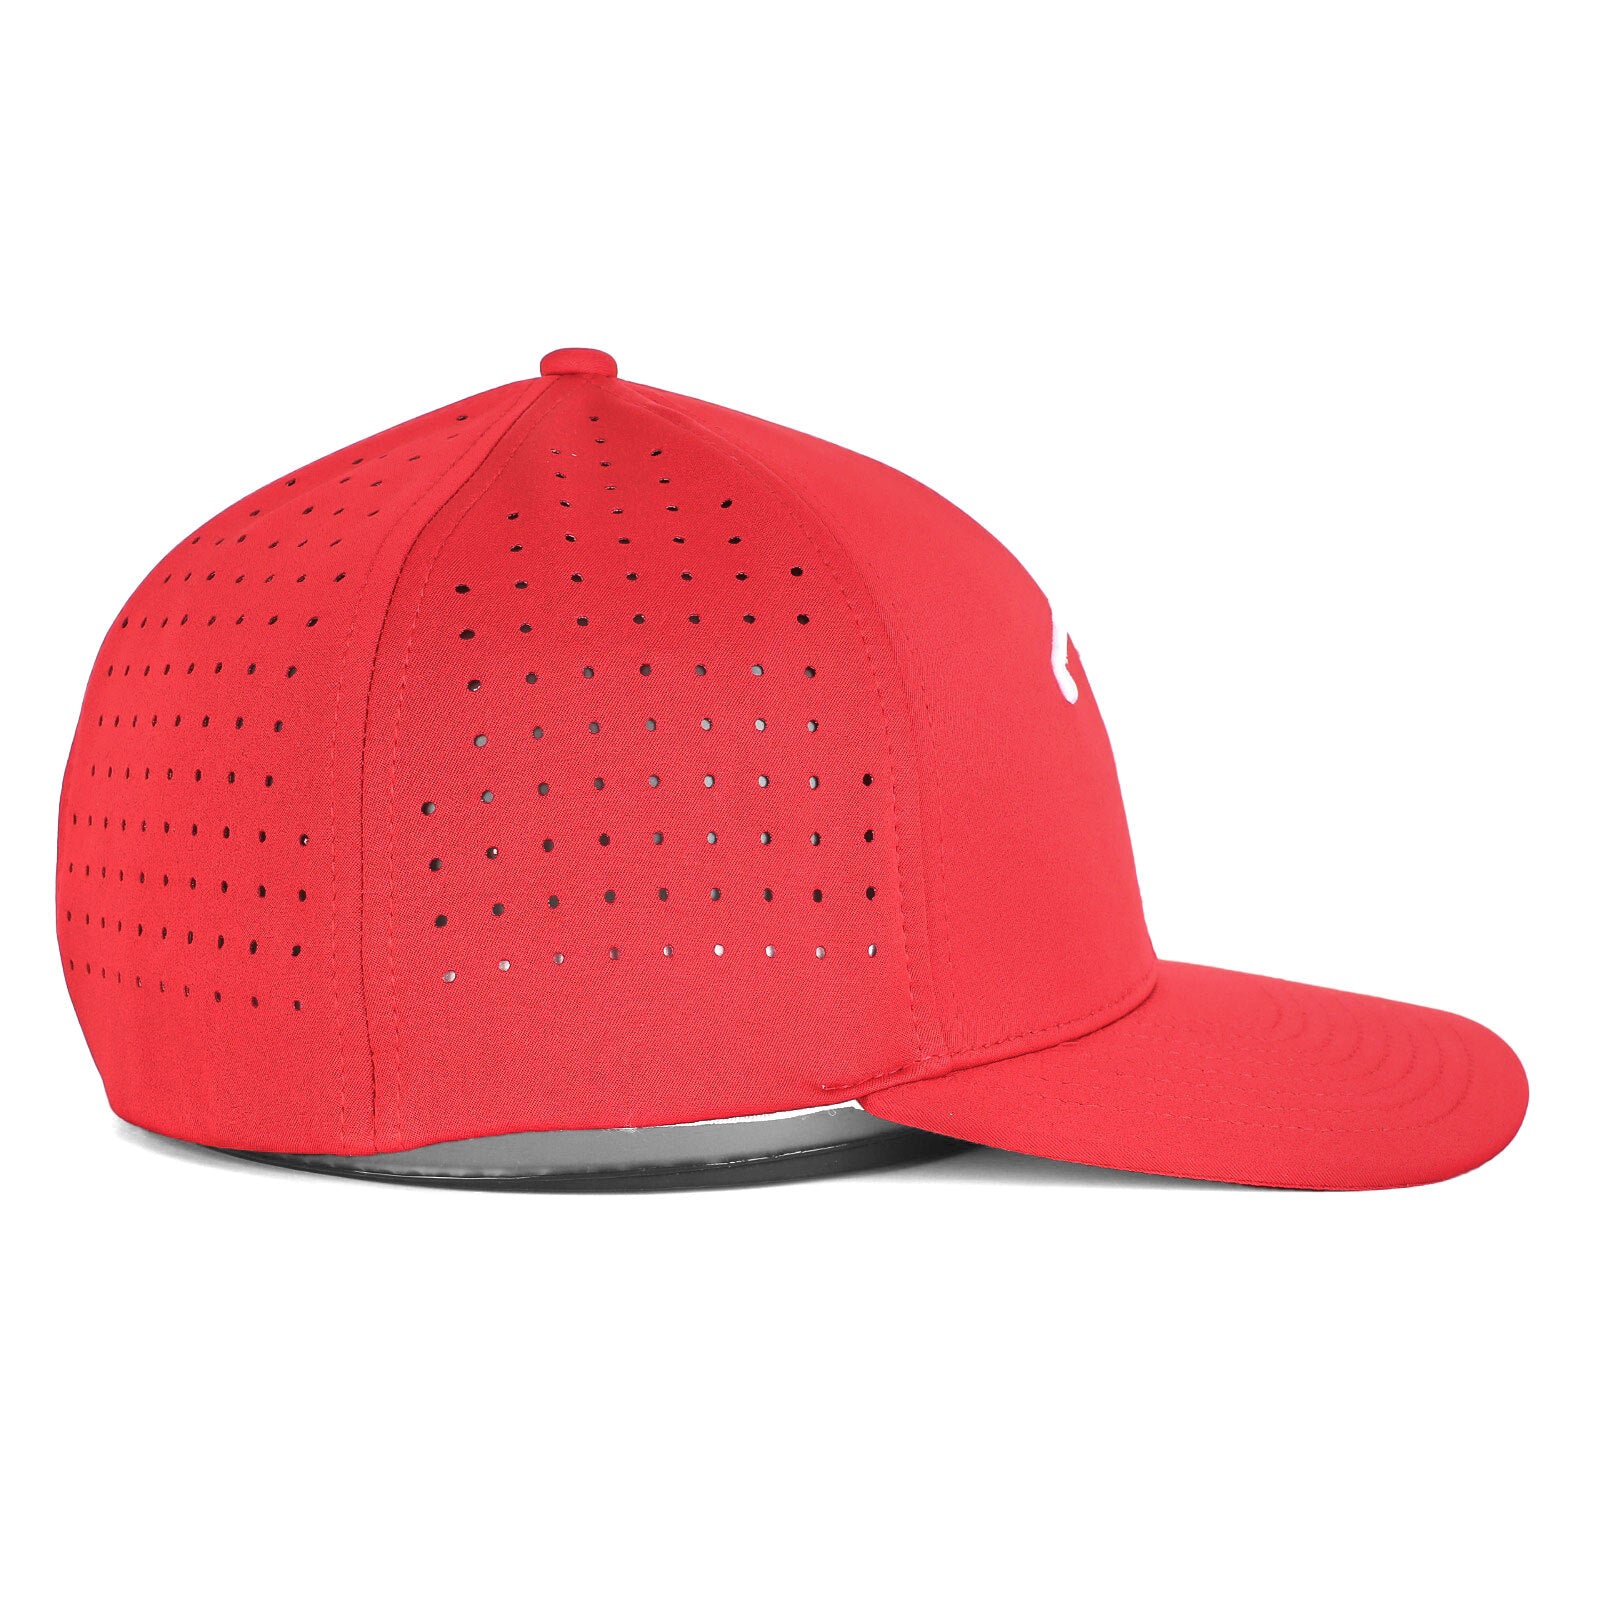 Bogeyman Red - Performance Golf Hat - Stretch Fit